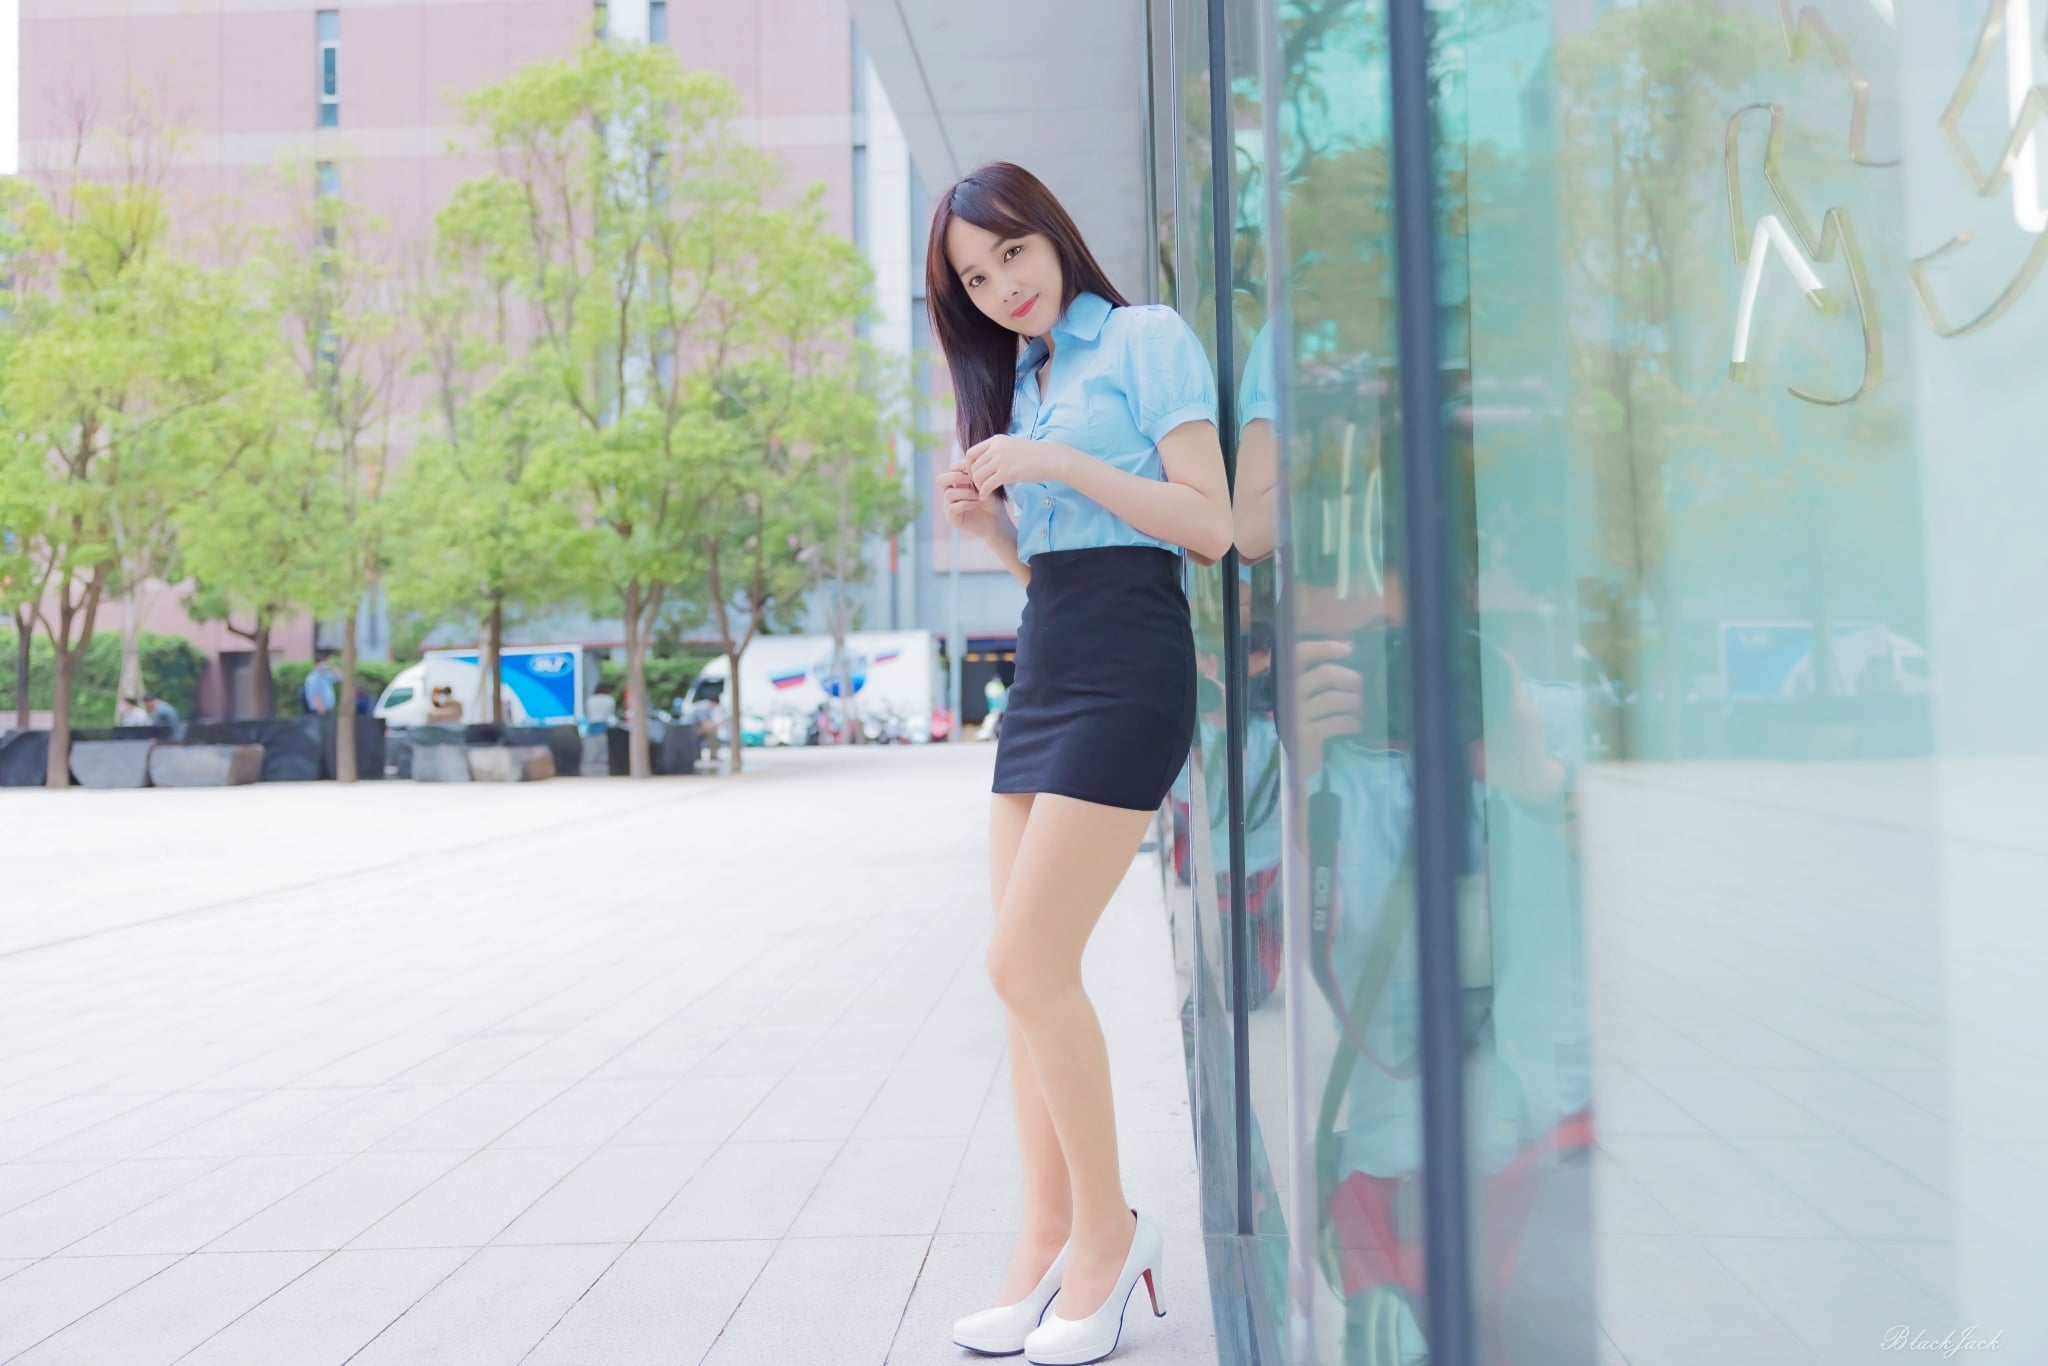 【網路收集】台灣美腿女郎-蔣雪兒 美女OL外拍寫真 (二) - 貼圖 - 絲襪美腿 -